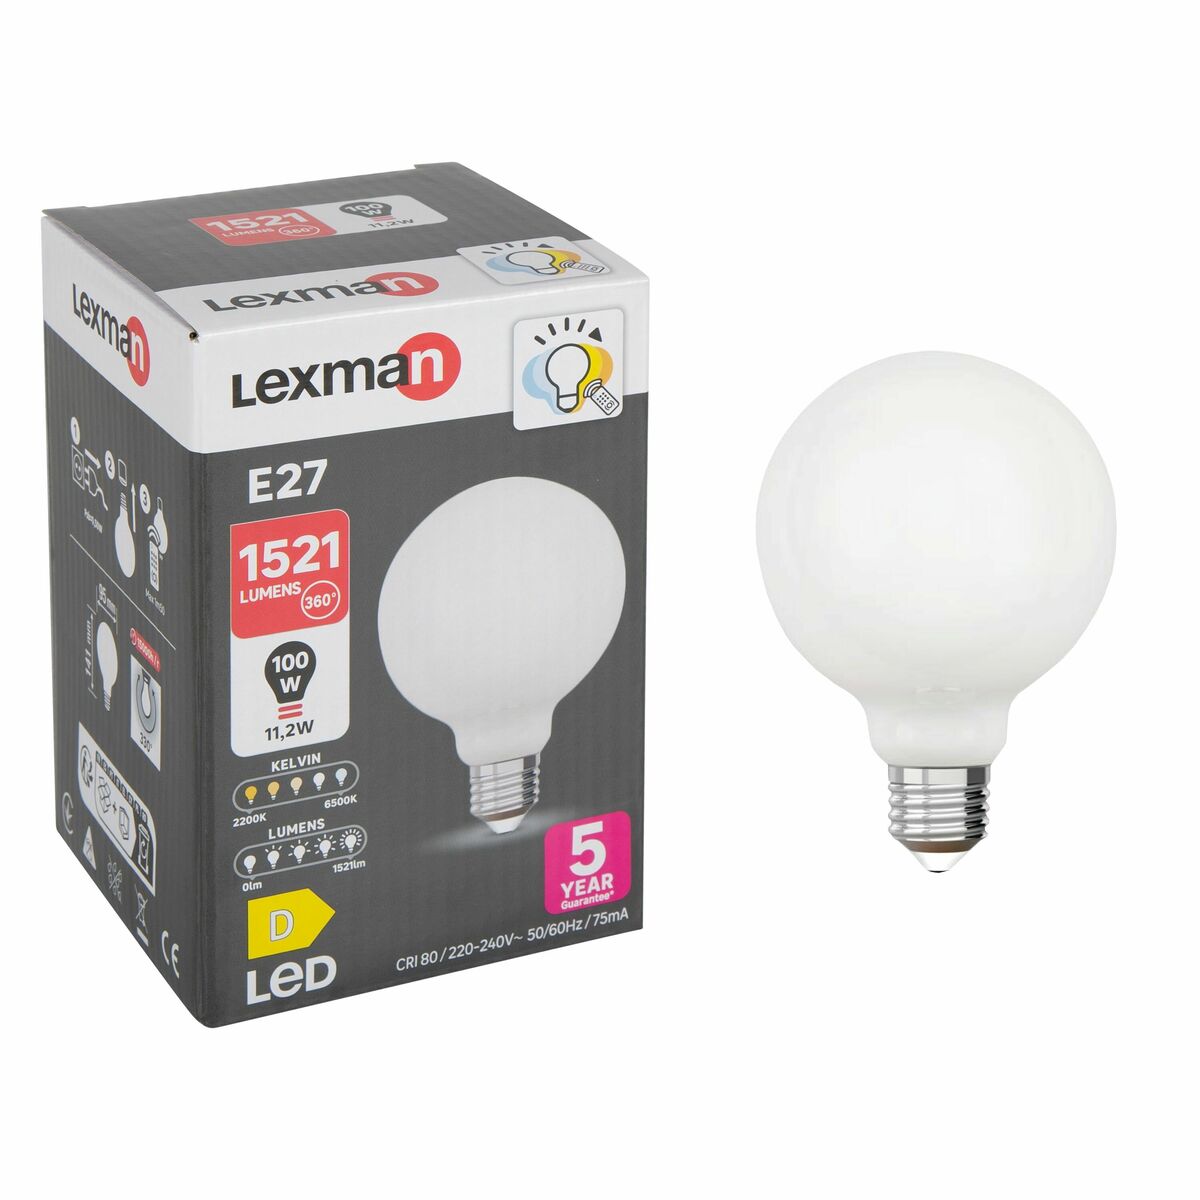 Żarówka LED E27 11,2 W = 100 W  1521 lm Od ciepłej do zimnej bieli Lexman